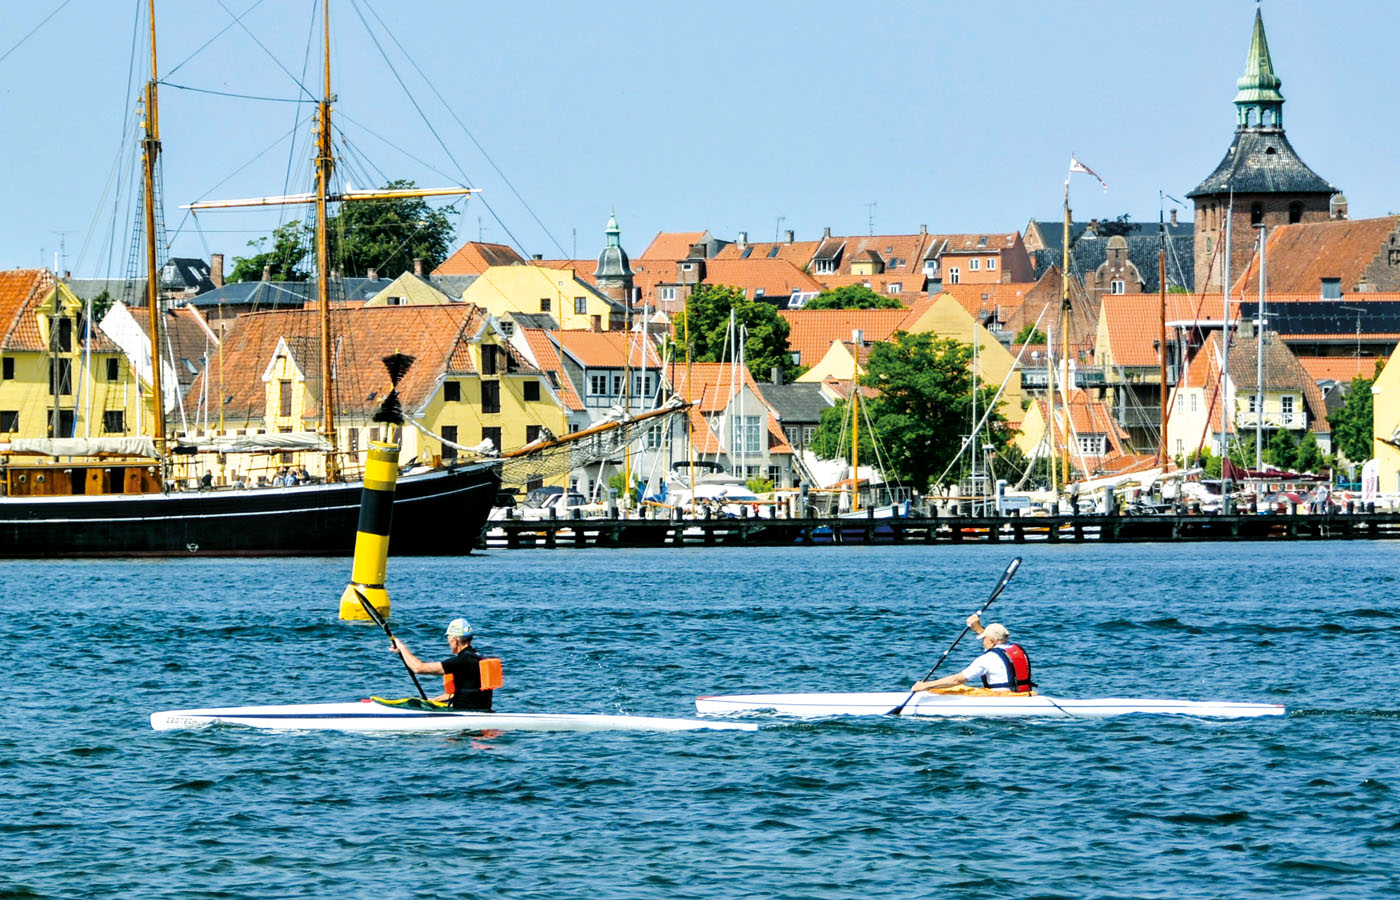 kanosejling i Svendborg havn - Få en aktiv ferie når du overnatter på vandrerhjemmet Danhostel i Svendborg